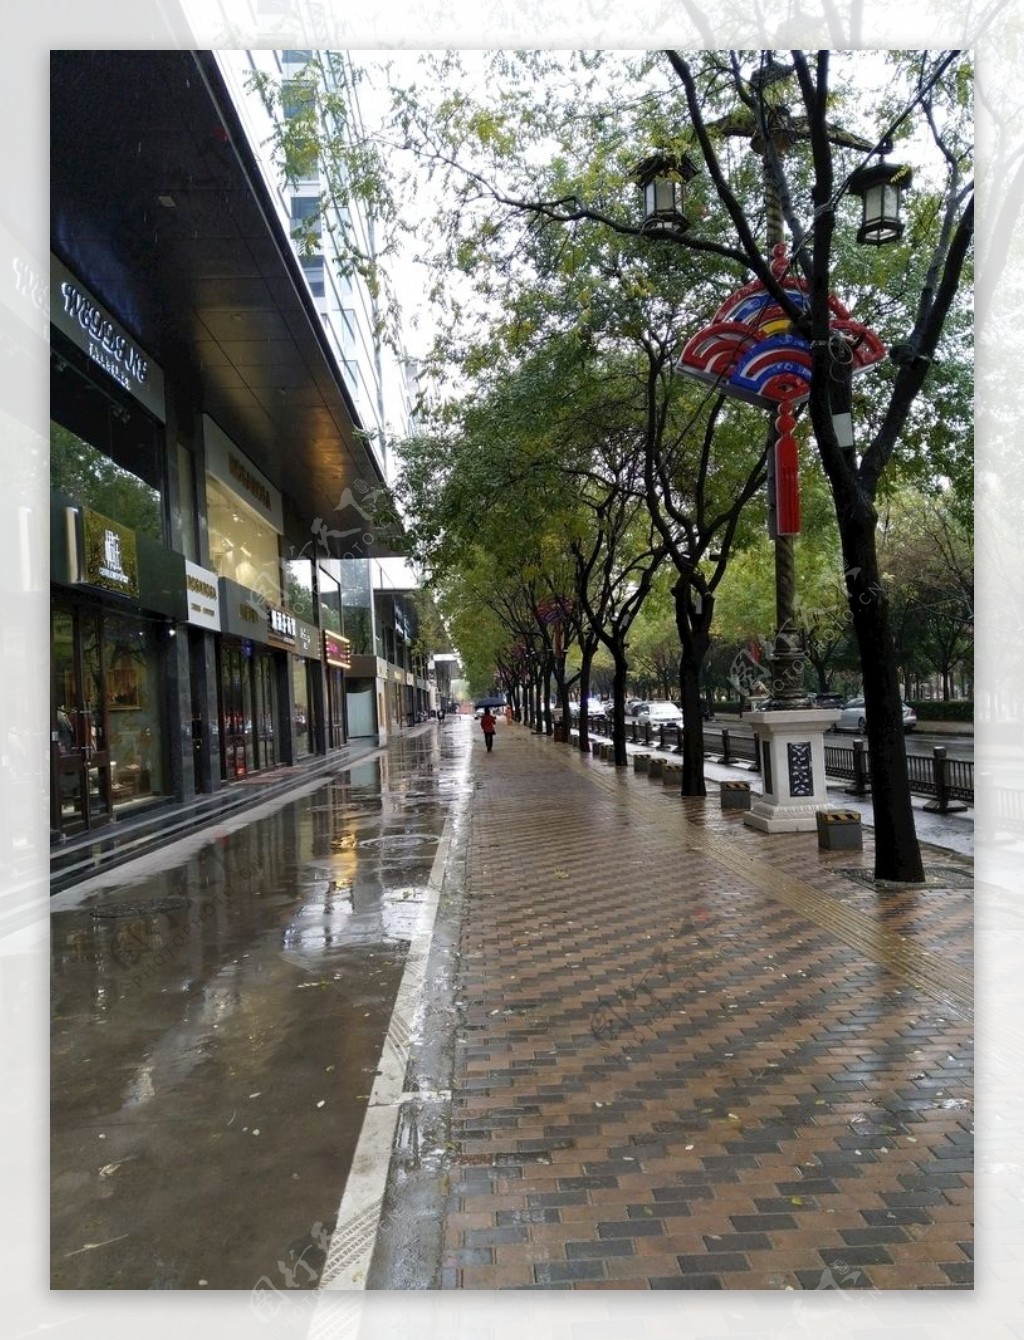 雨天的街道风景